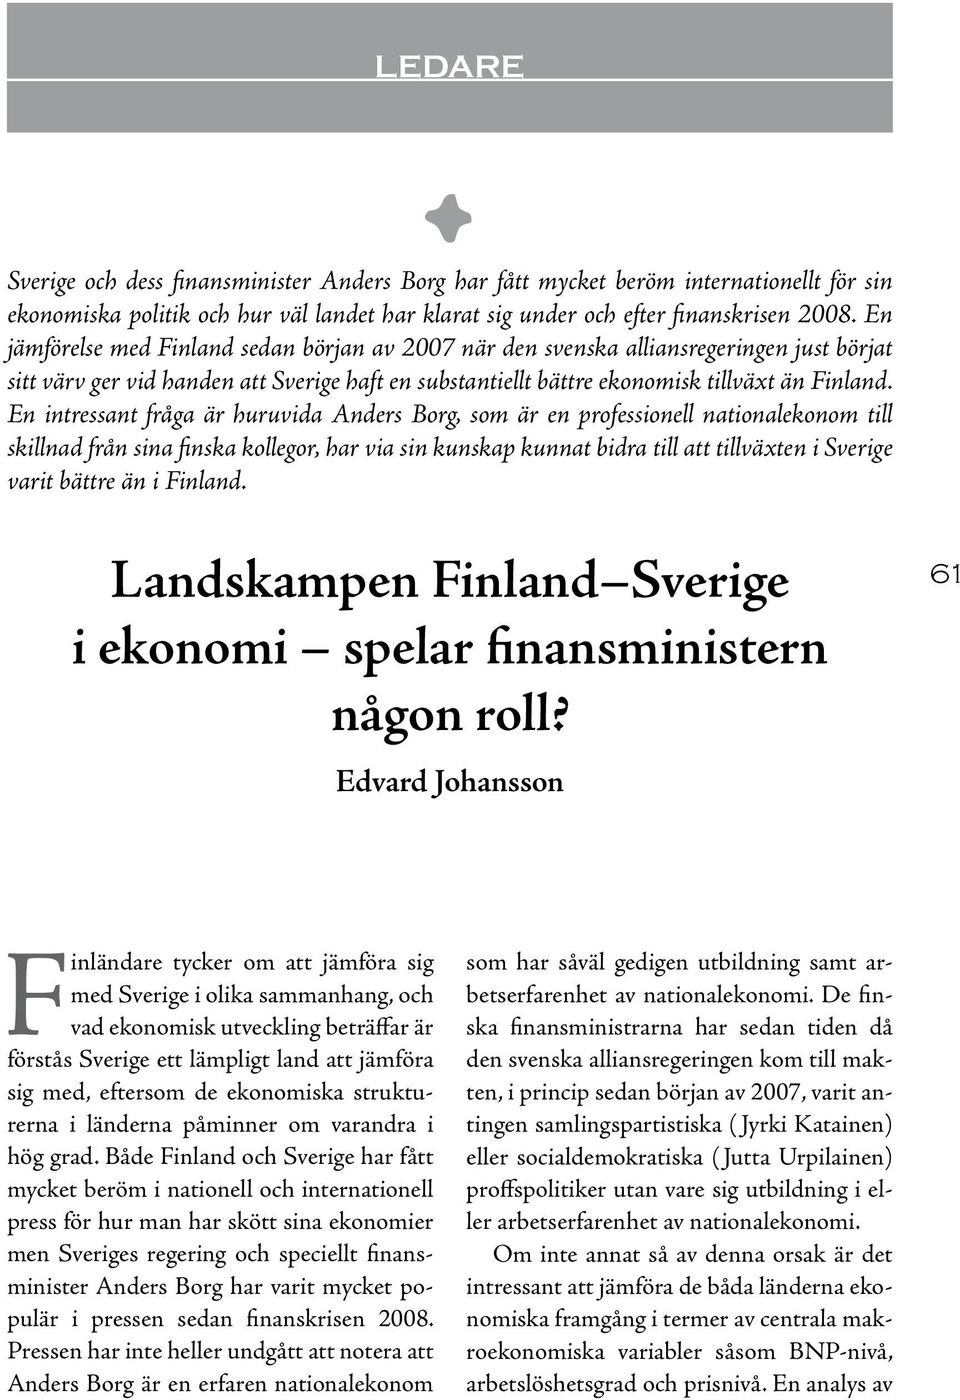 En intressant fråga är huruvida Anders Borg, som är en professionell nationalekonom till skillnad från sina finska kollegor, har via sin kunskap kunnat bidra till att tillväxten i Sverige varit